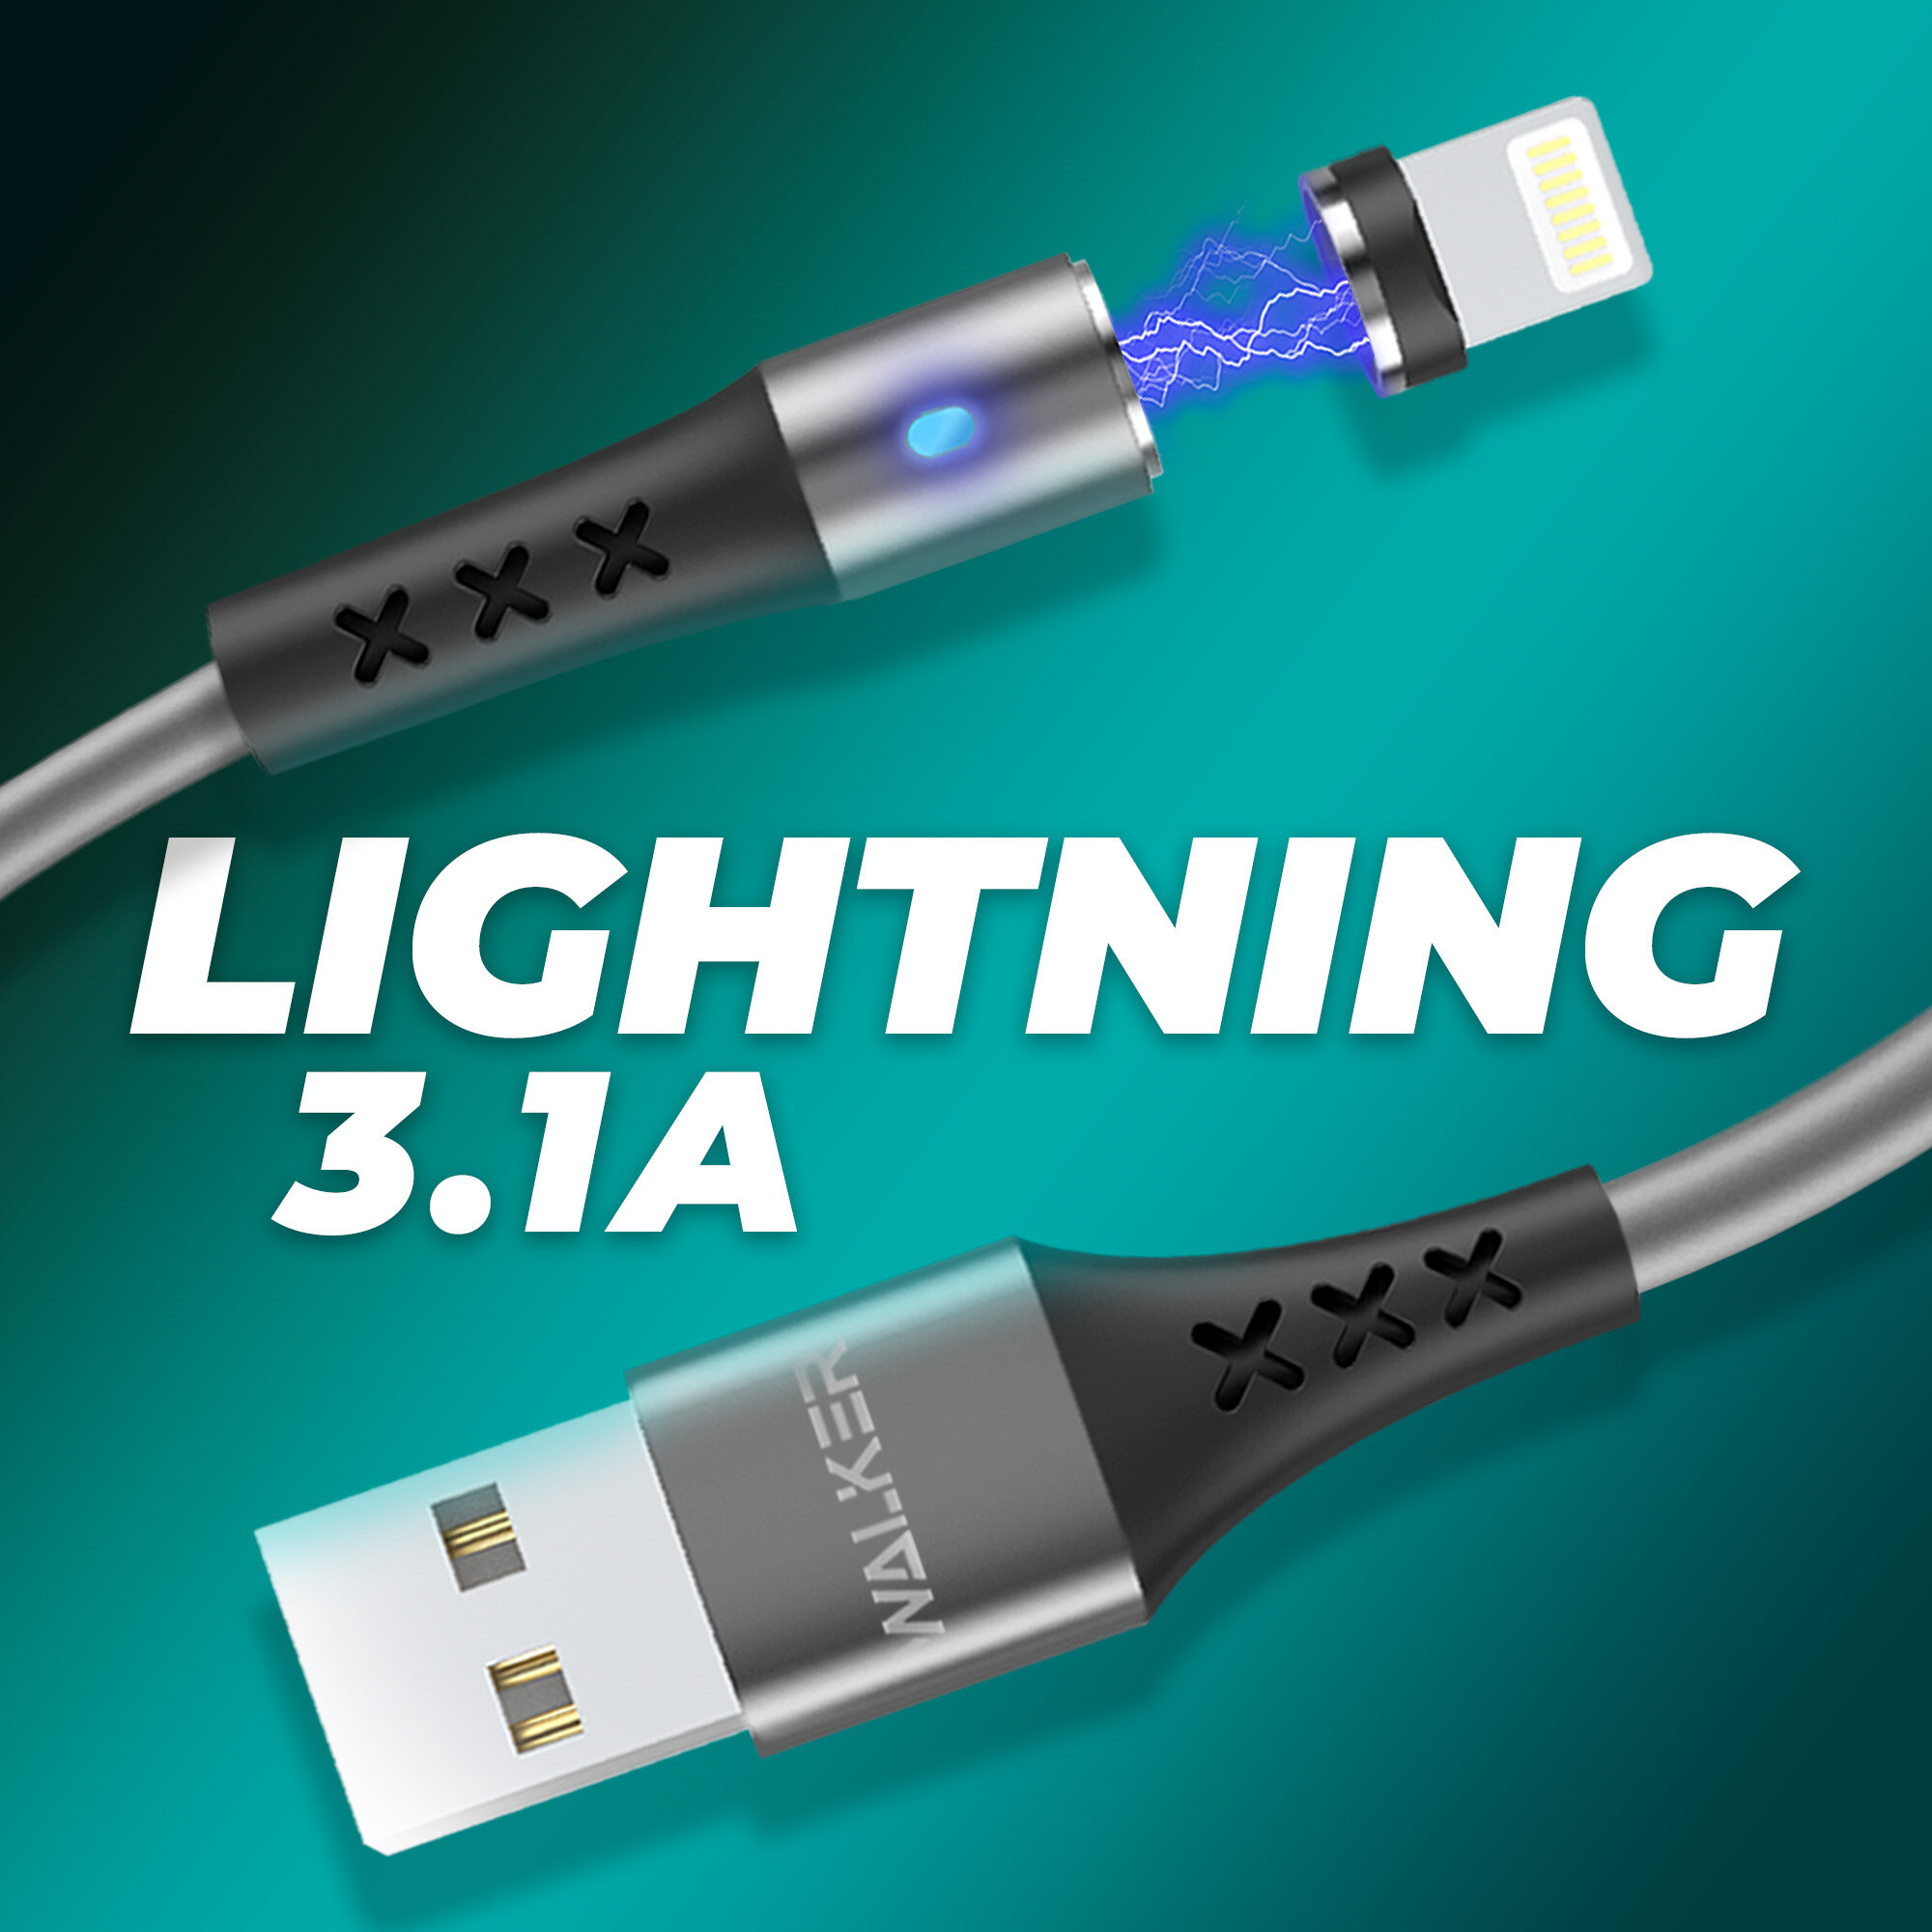 Кабель USB для телефона магнитный с индикатором Lightning, WALKER, WC-775, 3.1 А, usb провод на айфон, шнур для зарядки на iphone, аксессуар, серый